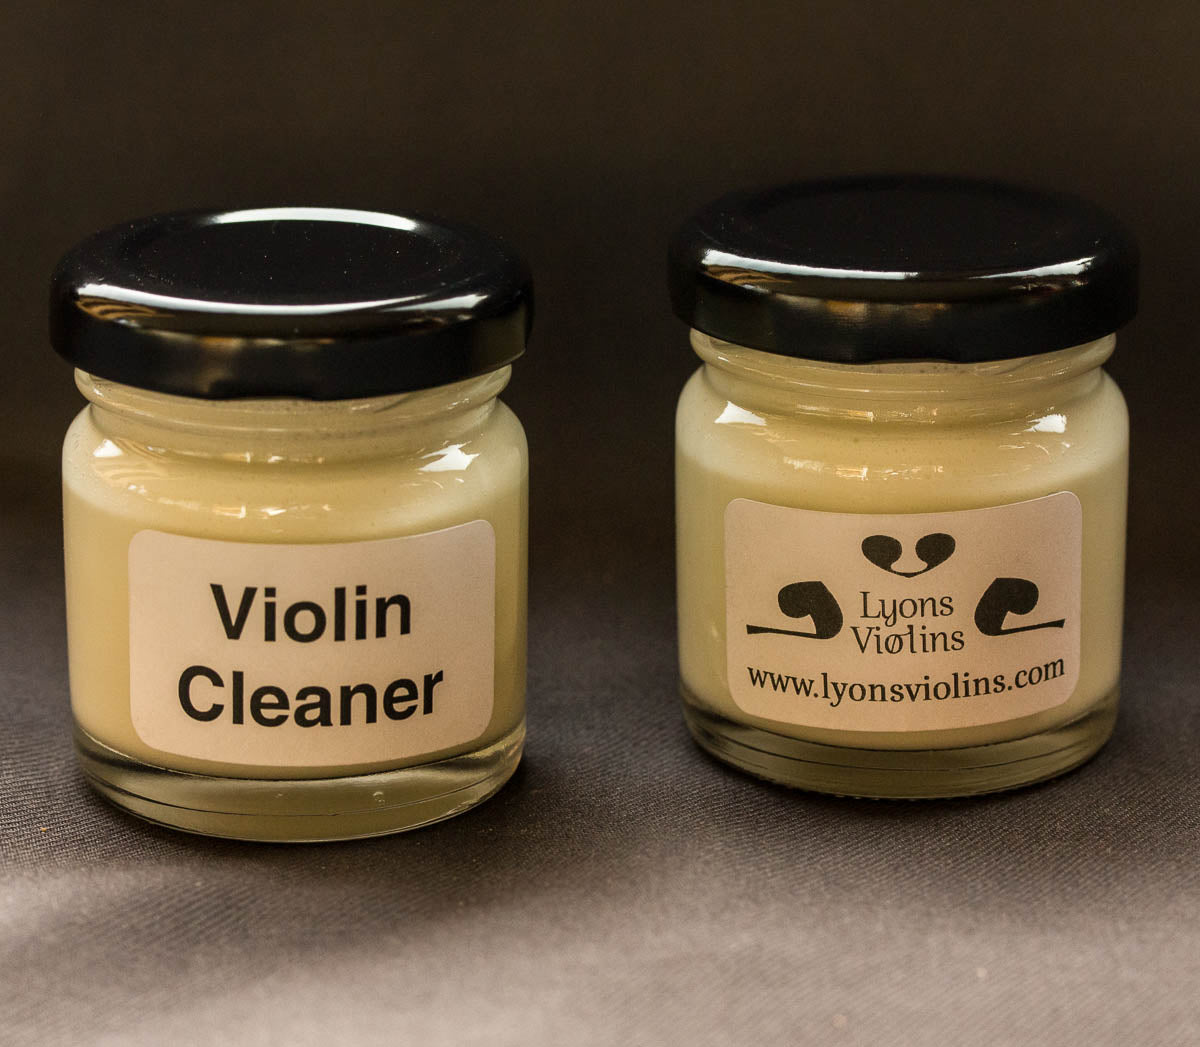 Violin Cleaner - Lyons Violins